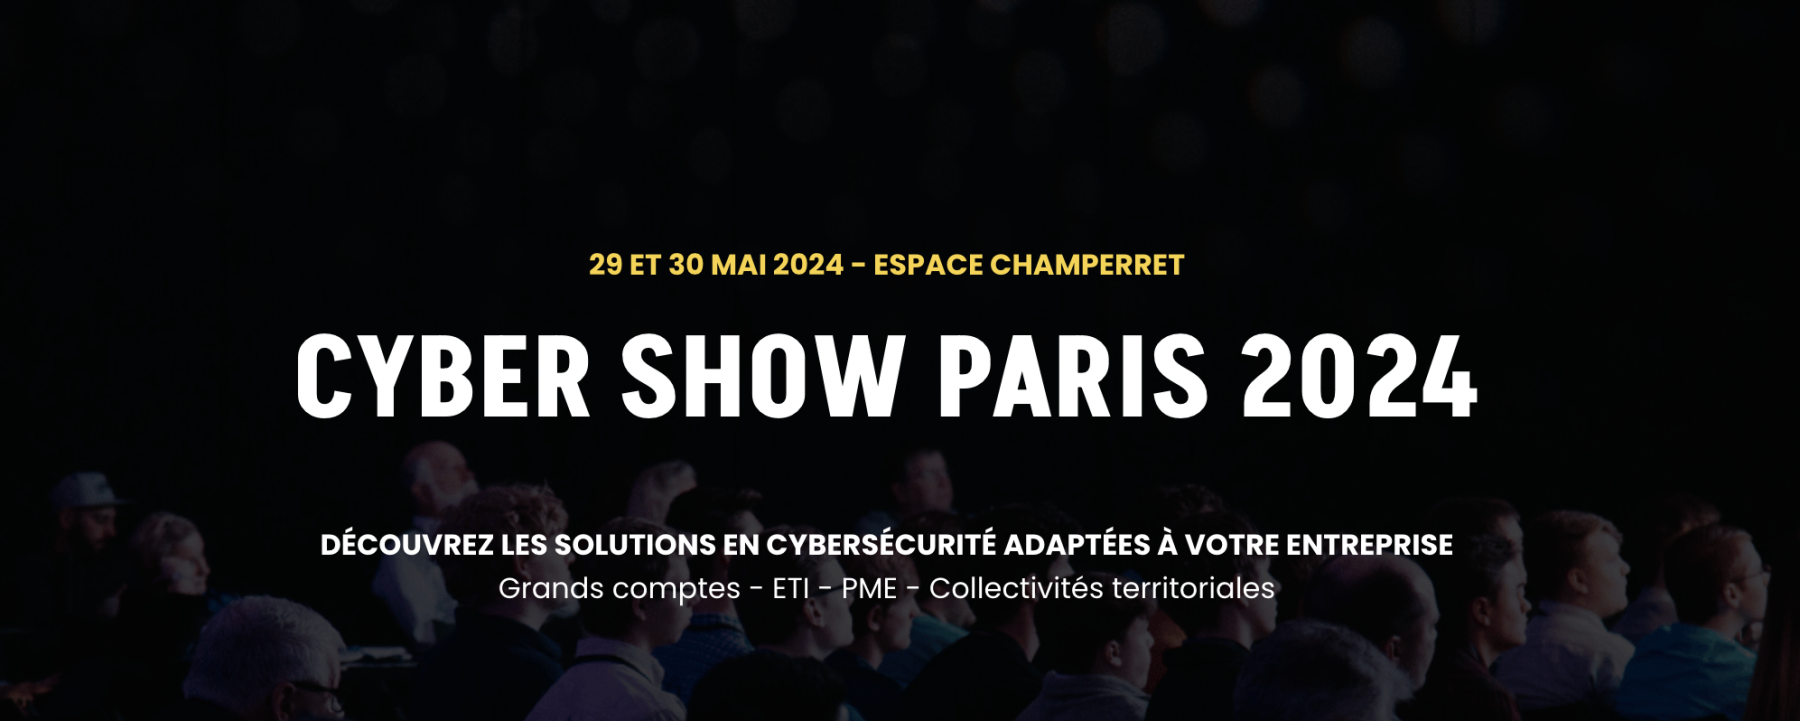 CYBER SHOW PARIS 2024